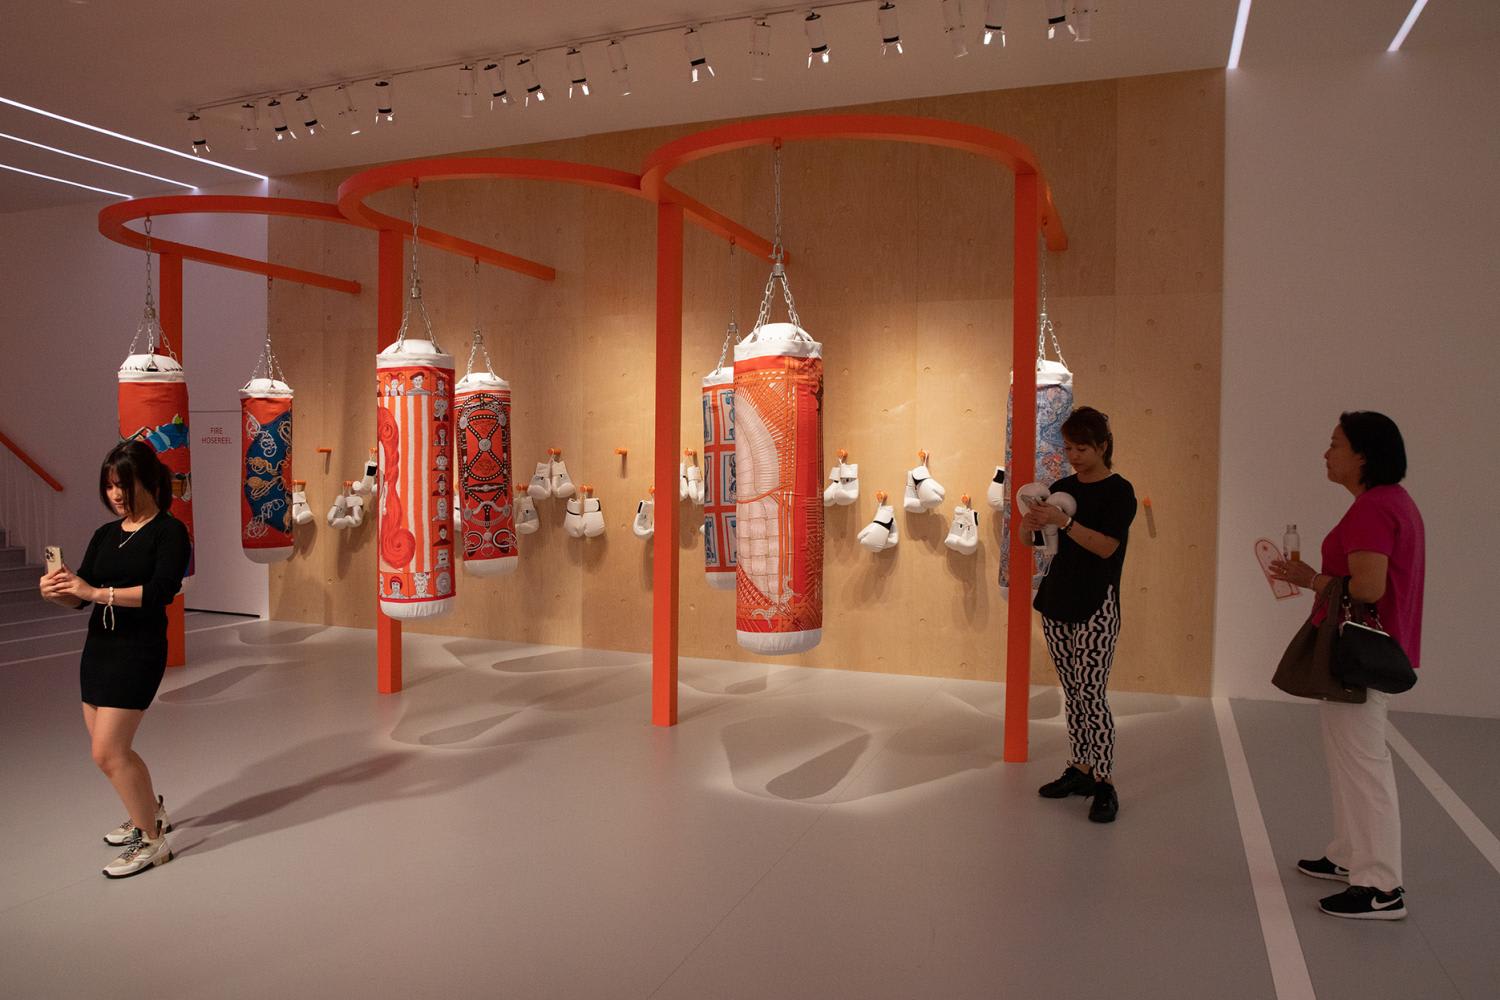 Hermès builds pop-up gym in Chengdu - leatherbiz: Leading news si